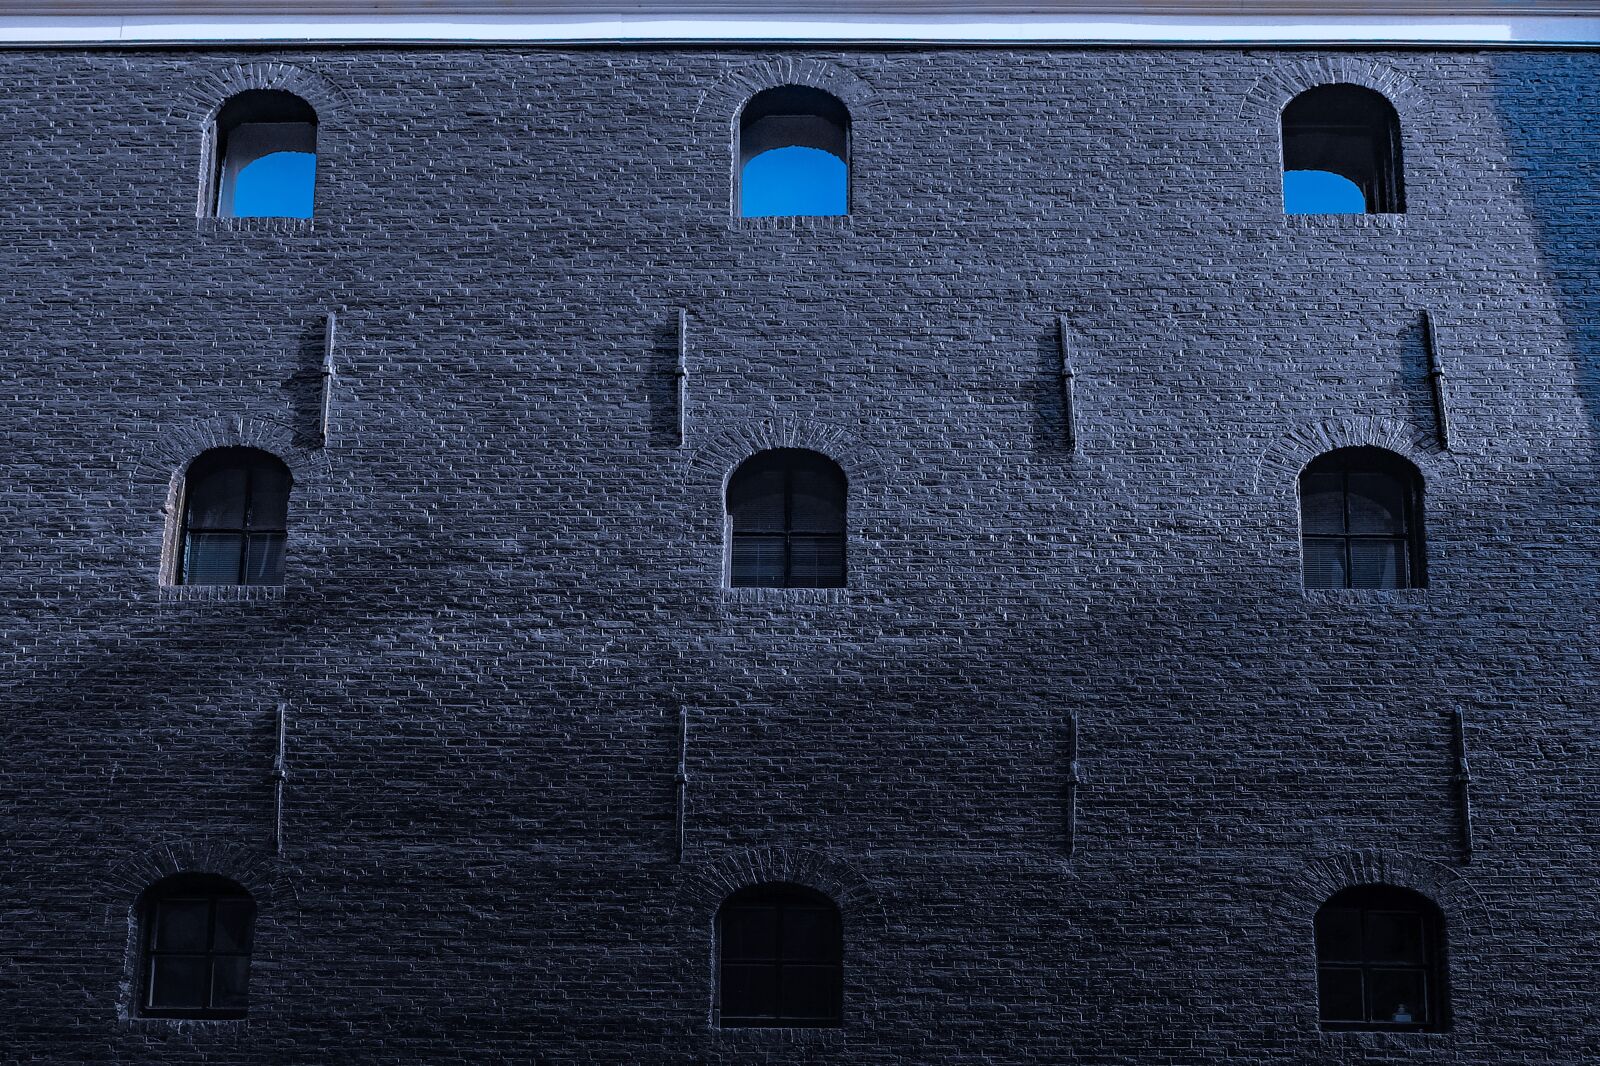 Fujifilm X30 sample photo. Building, facade, abstract photography